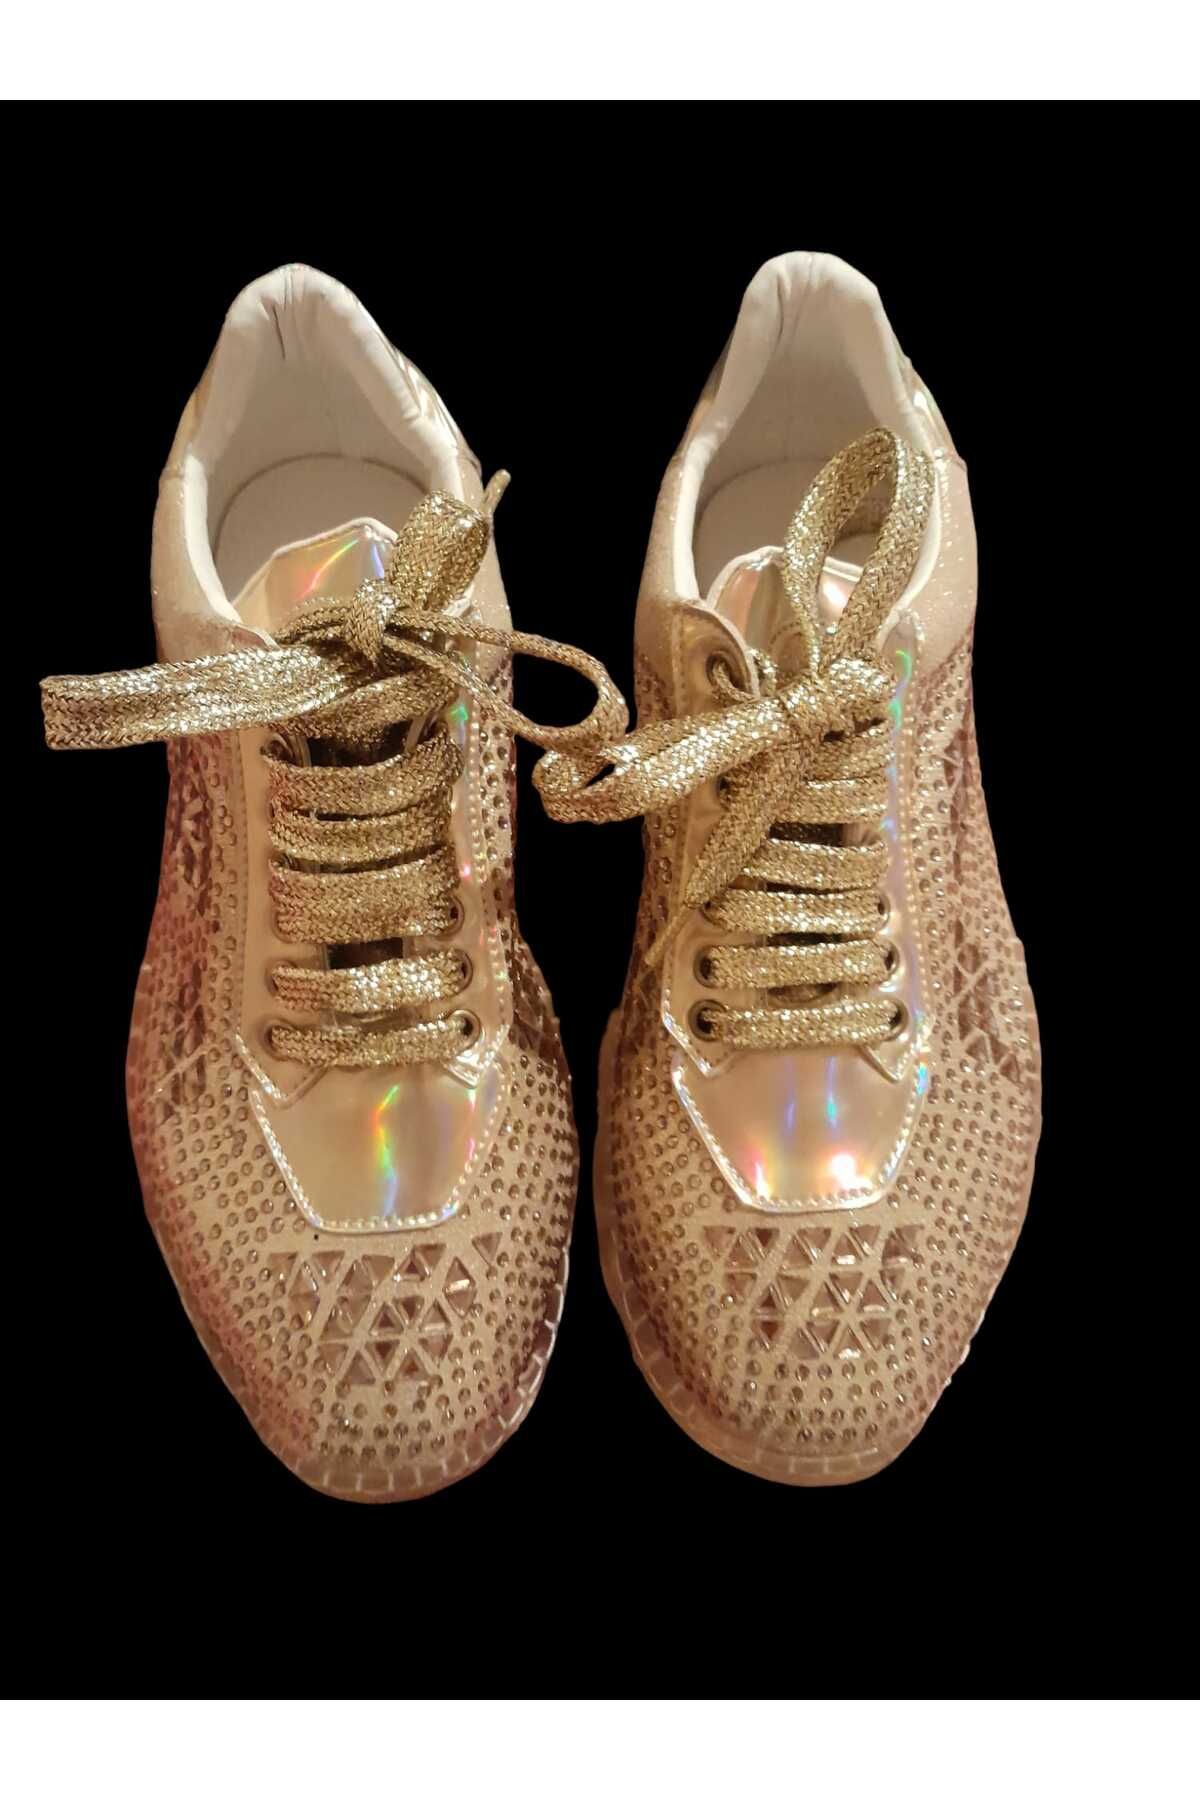 dms lüx - gold - özel seri kadın ayakkabı - gold altın rengi lüx spor ayakkabı - şık tasarım